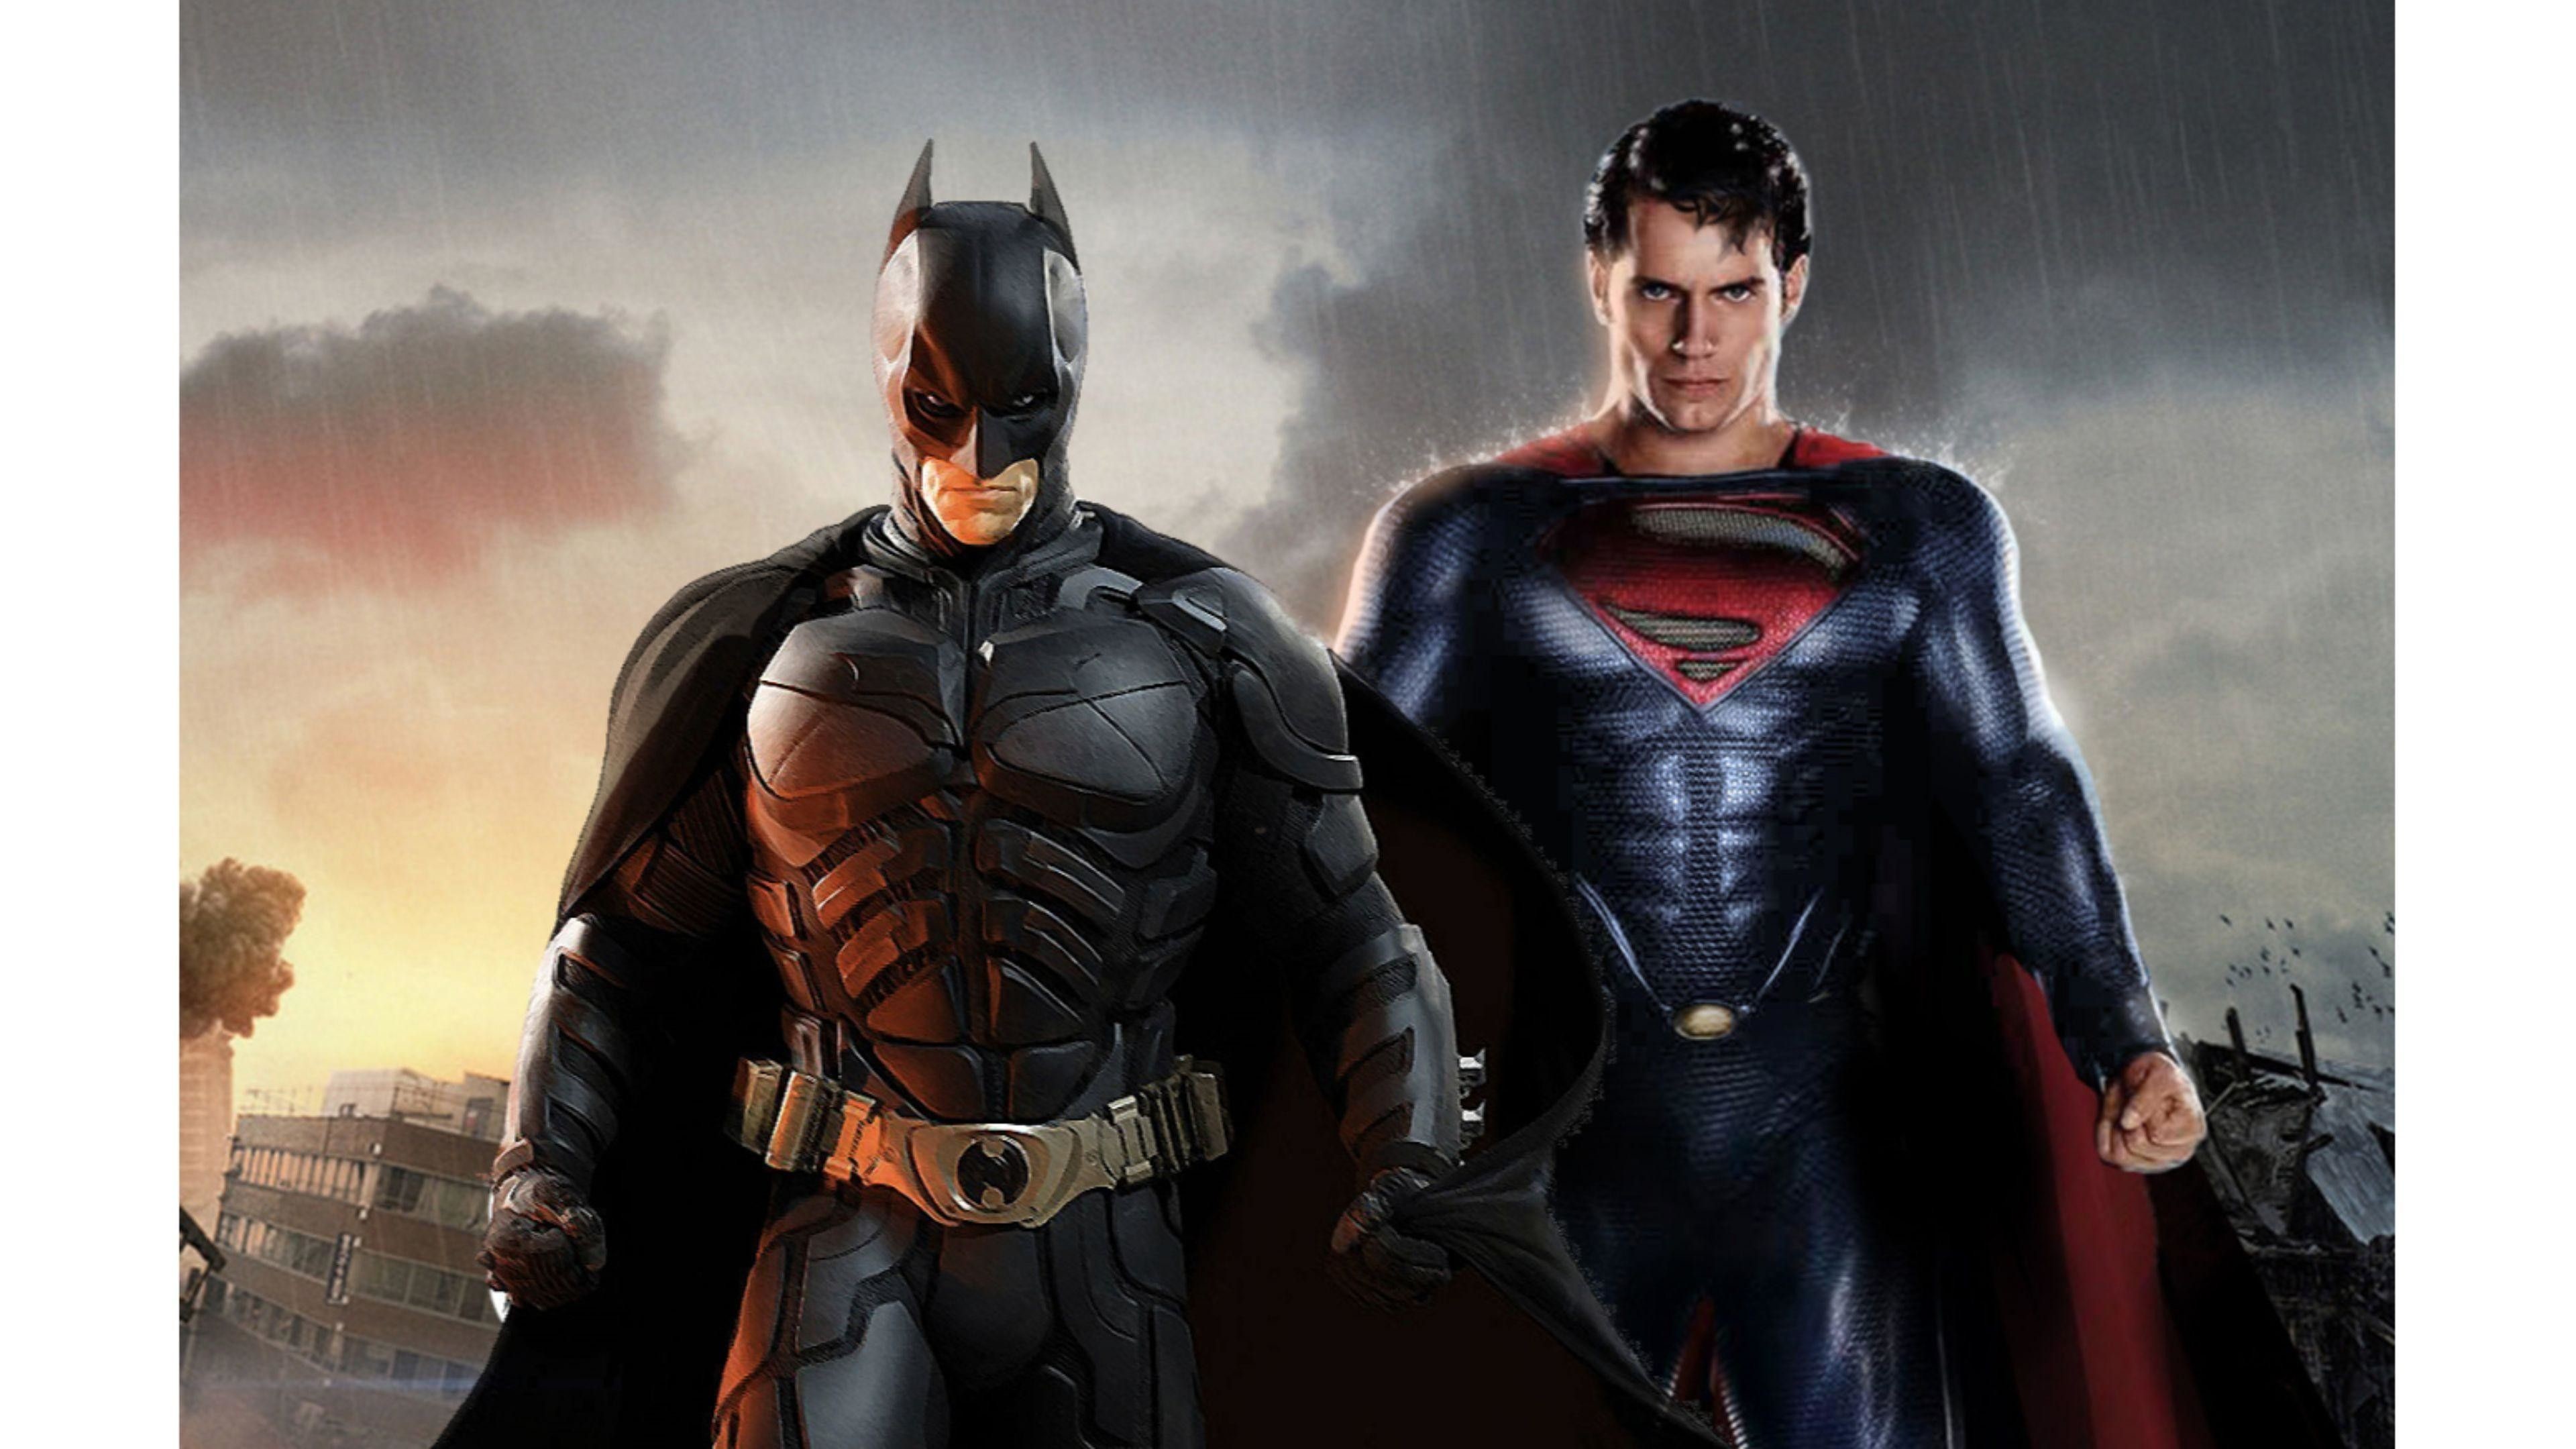 Batman vs Superman 4K Wallpaper (63+ images)